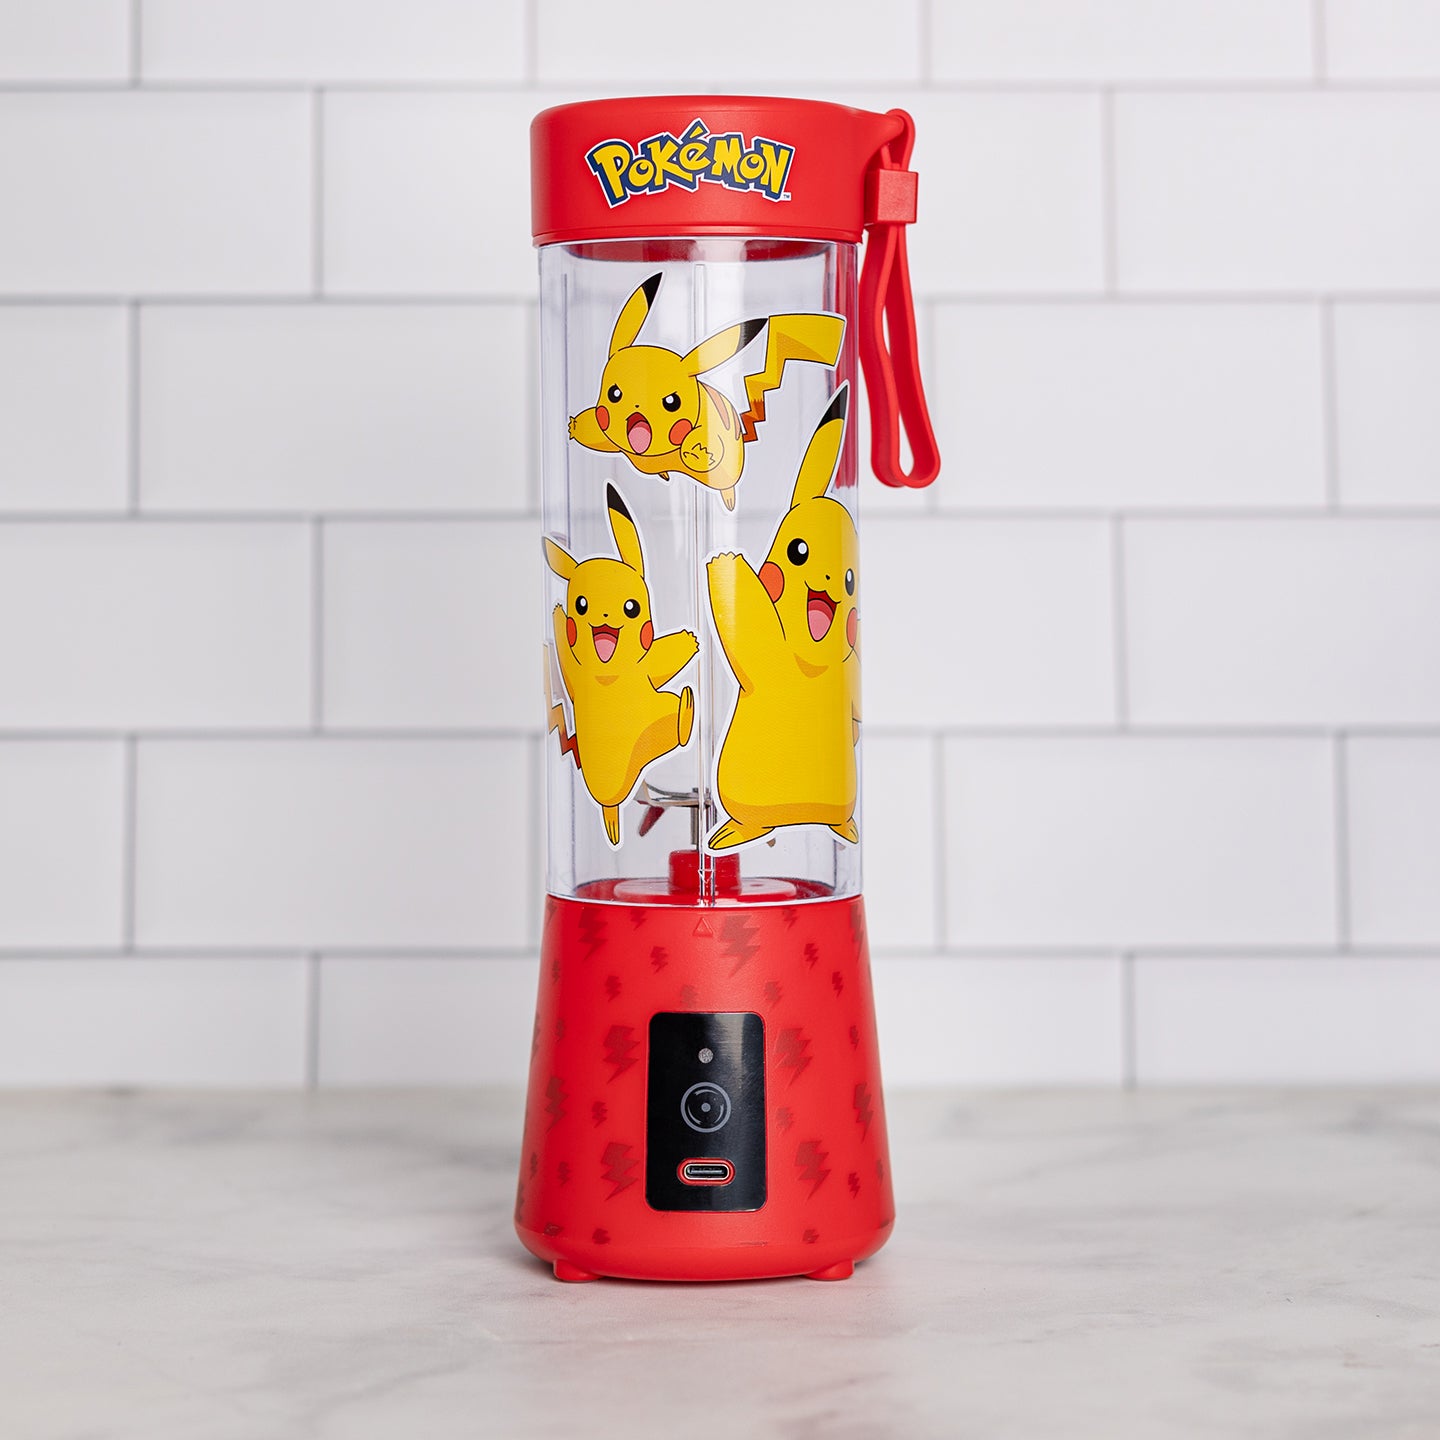  Uncanny Brands Pokémon Pokeball Popcorn Maker- Pokémon